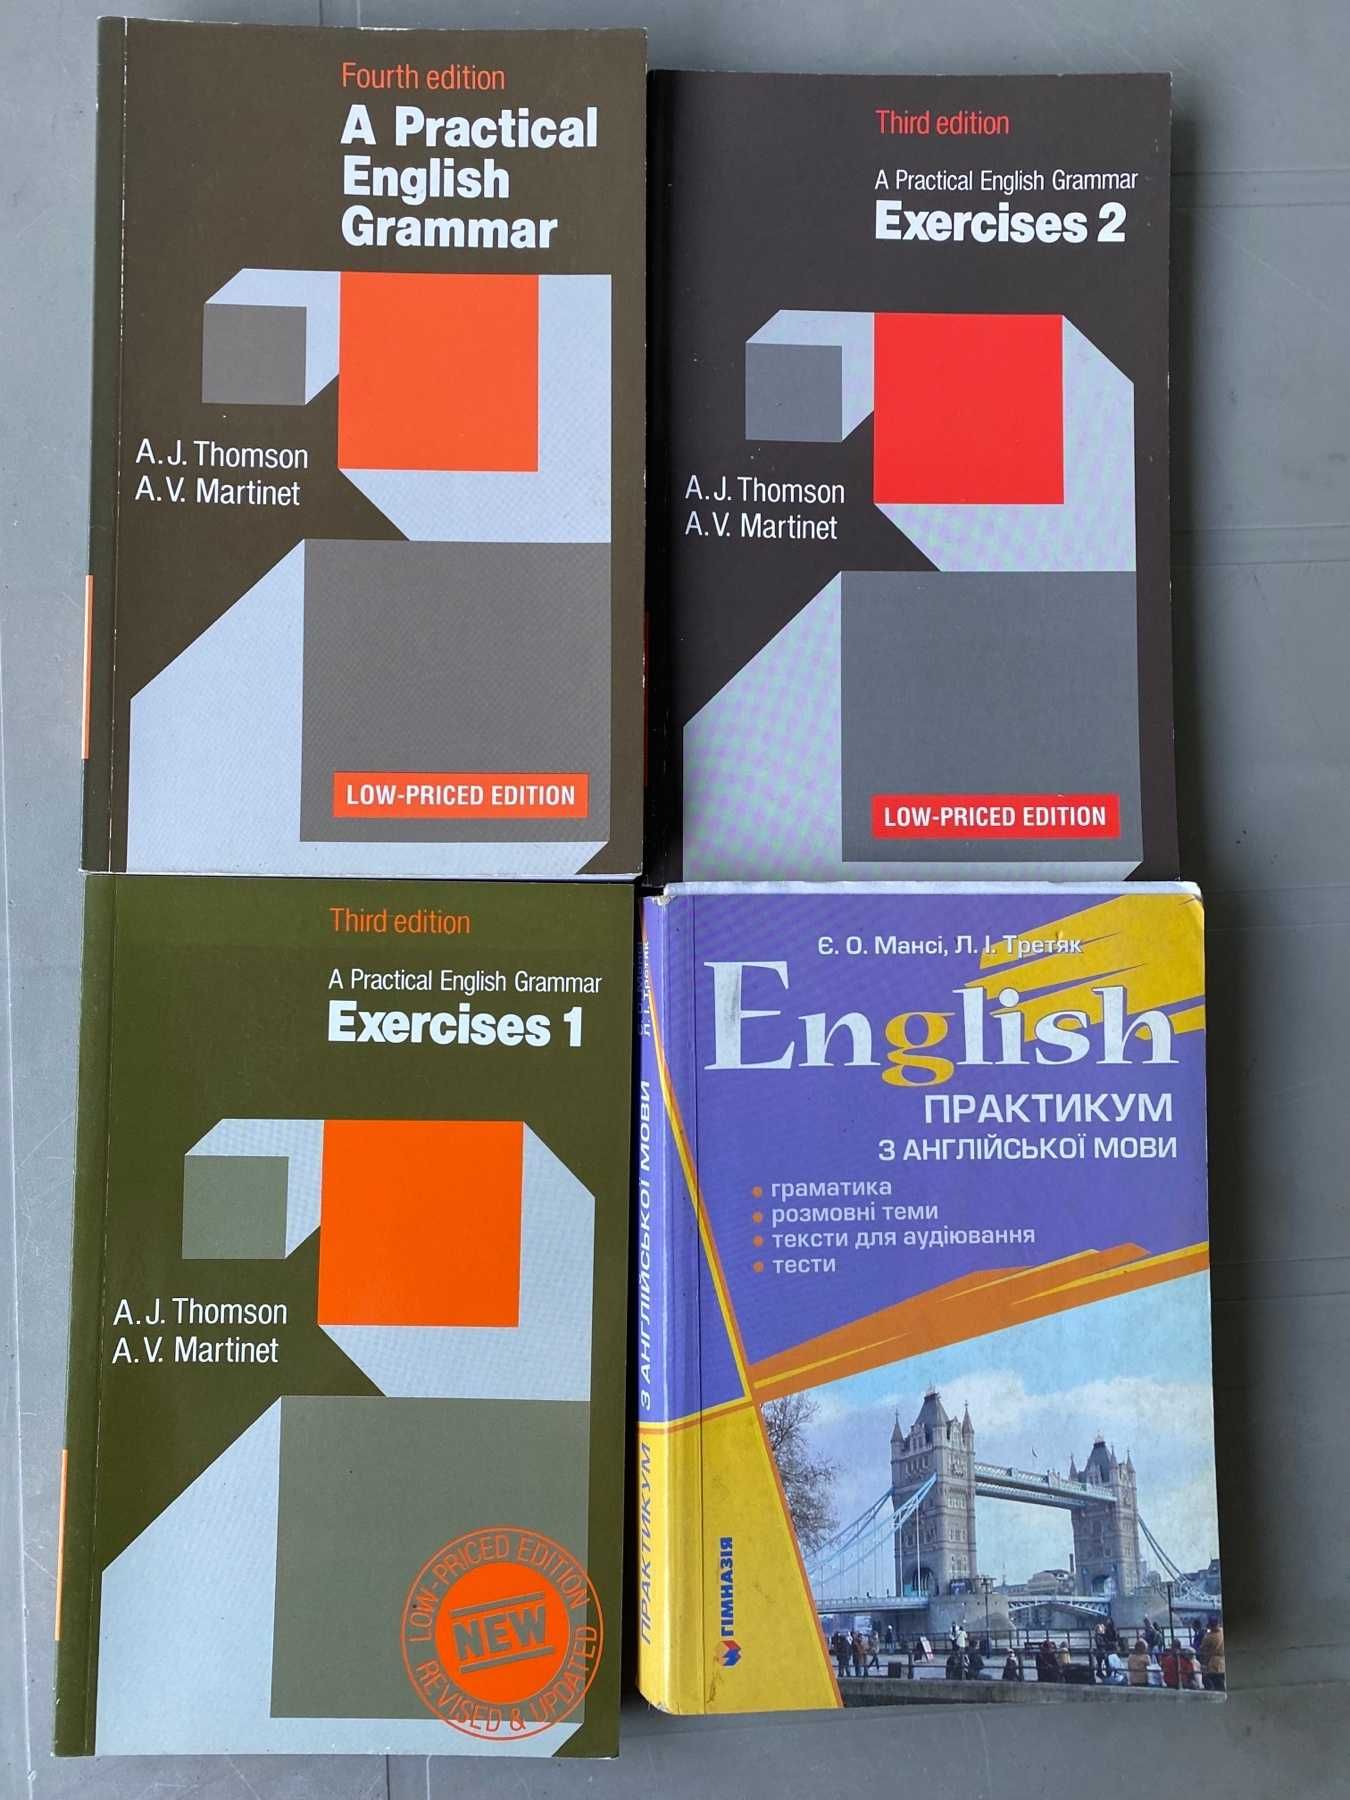 Учебники самоучители английского языка